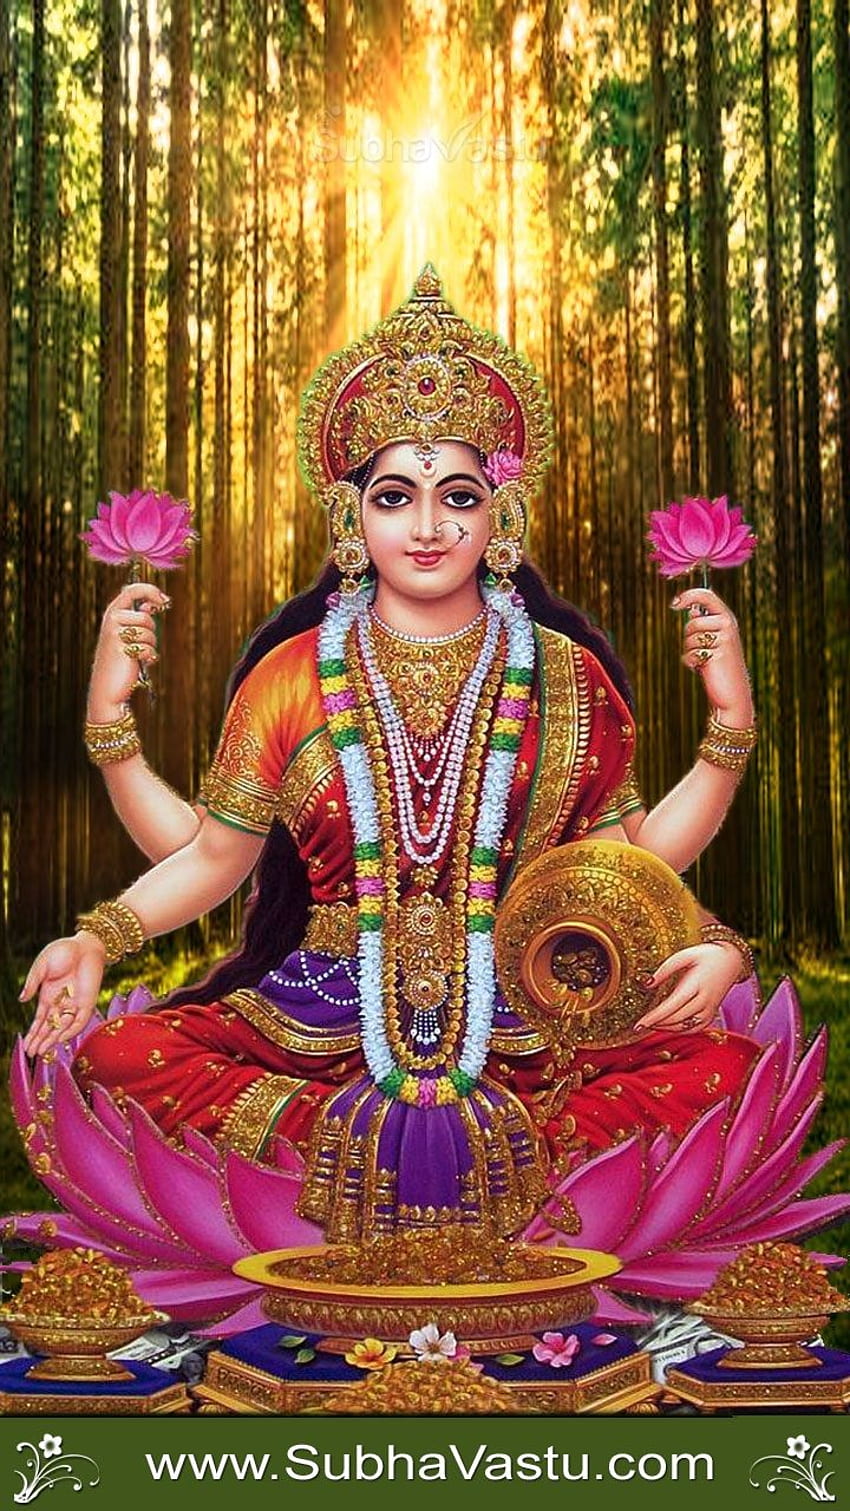 Subhavastu Spiritual God Mobile - Mahalaxmi Untuk Seluler wallpaper ponsel HD